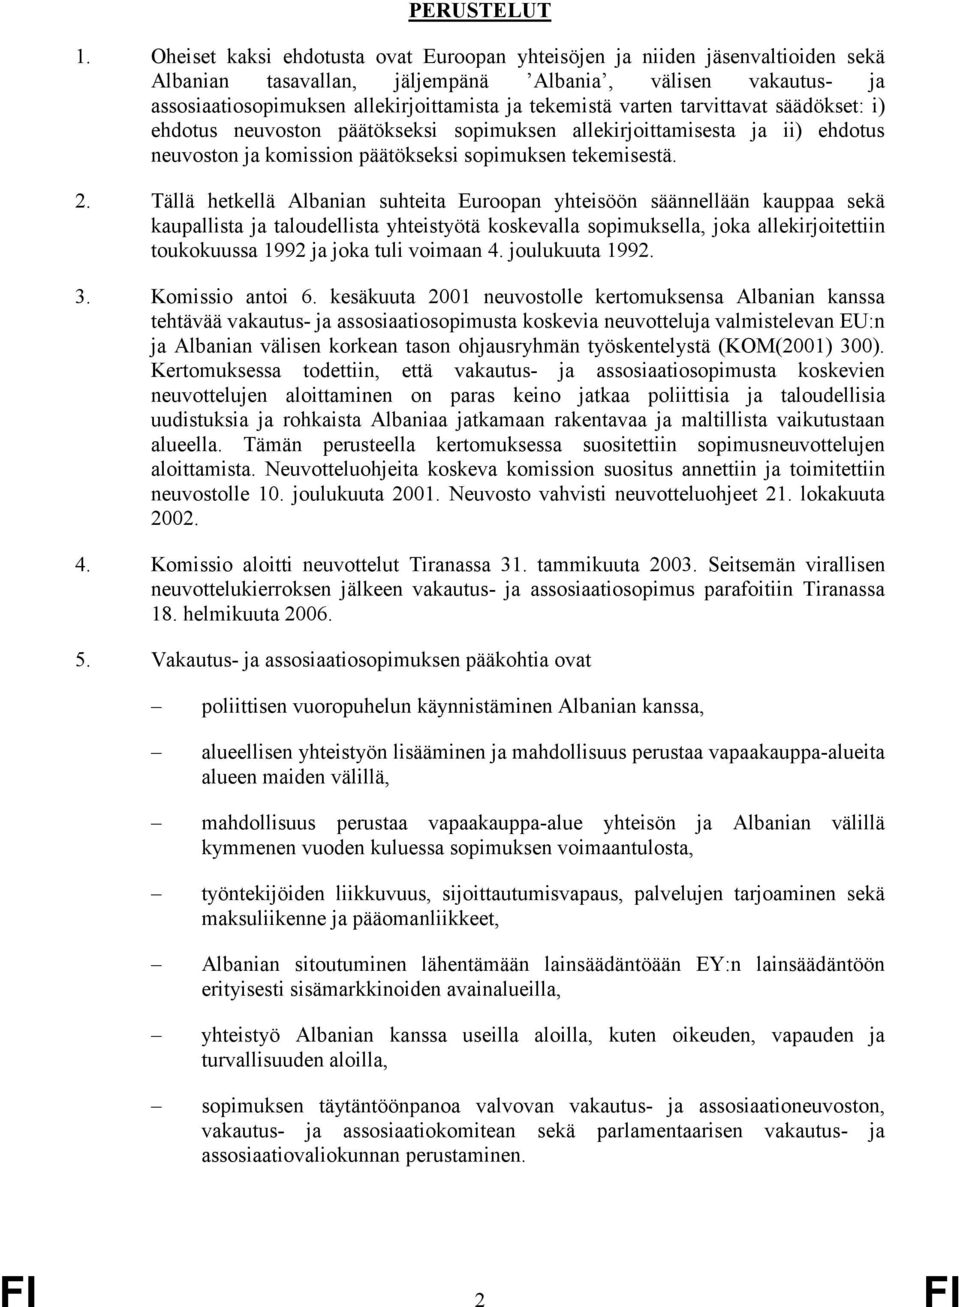 Tällä hetkellä Albanian suhteita Euroopan yhteisöön säännellään kauppaa sekä kaupallista ja taloudellista yhteistyötä koskevalla sopimuksella, joka allekirjoitettiin toukokuussa1992jajokatulivoimaan4.